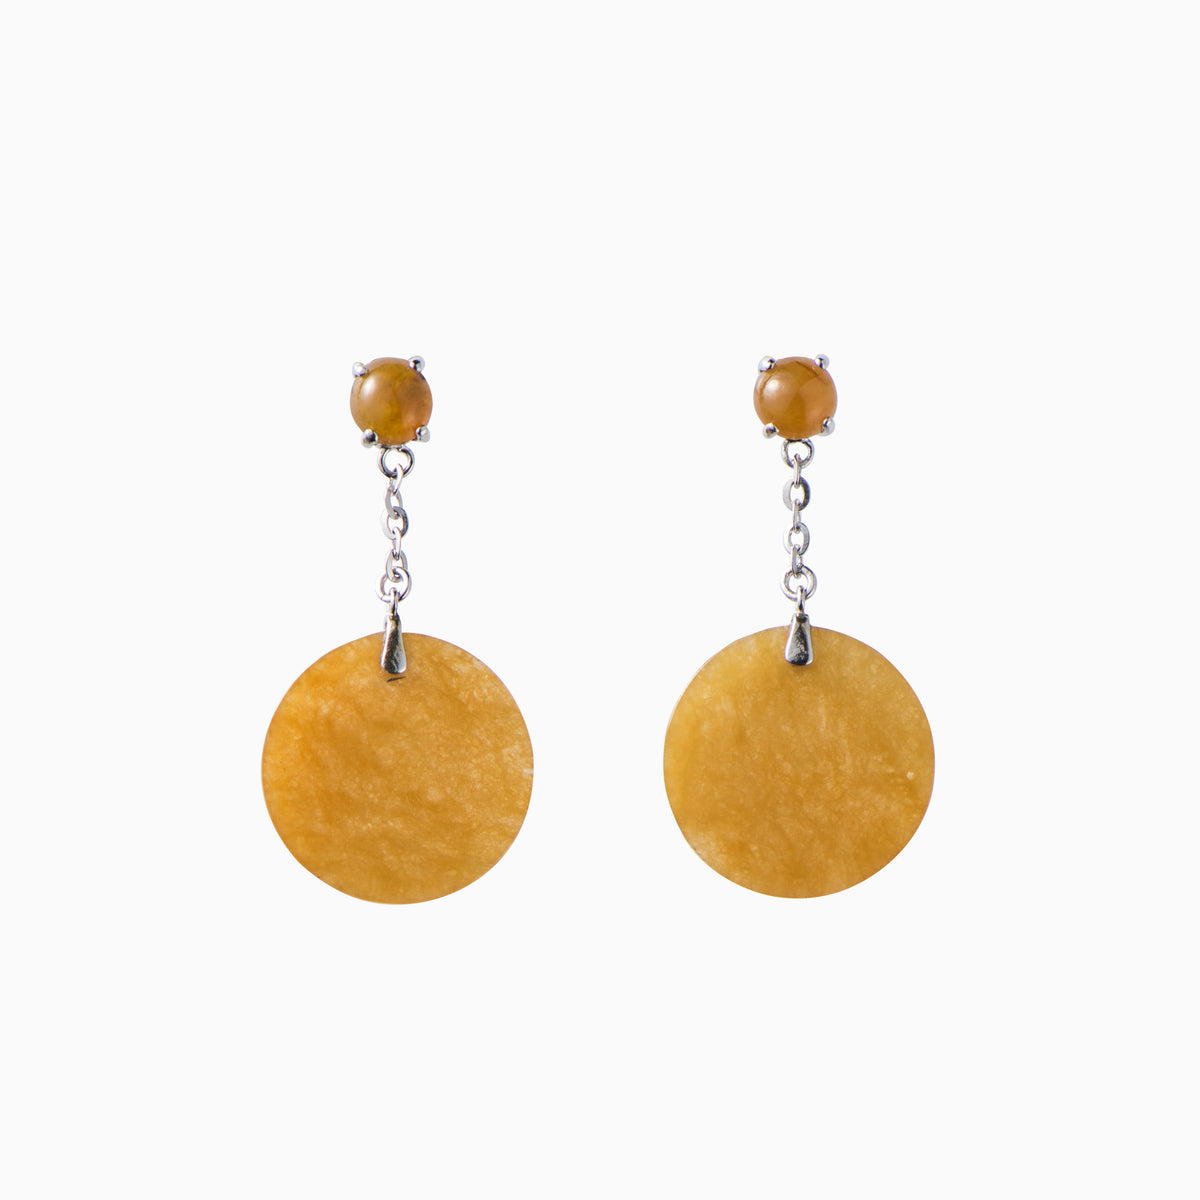 Honey yellow jade earrings